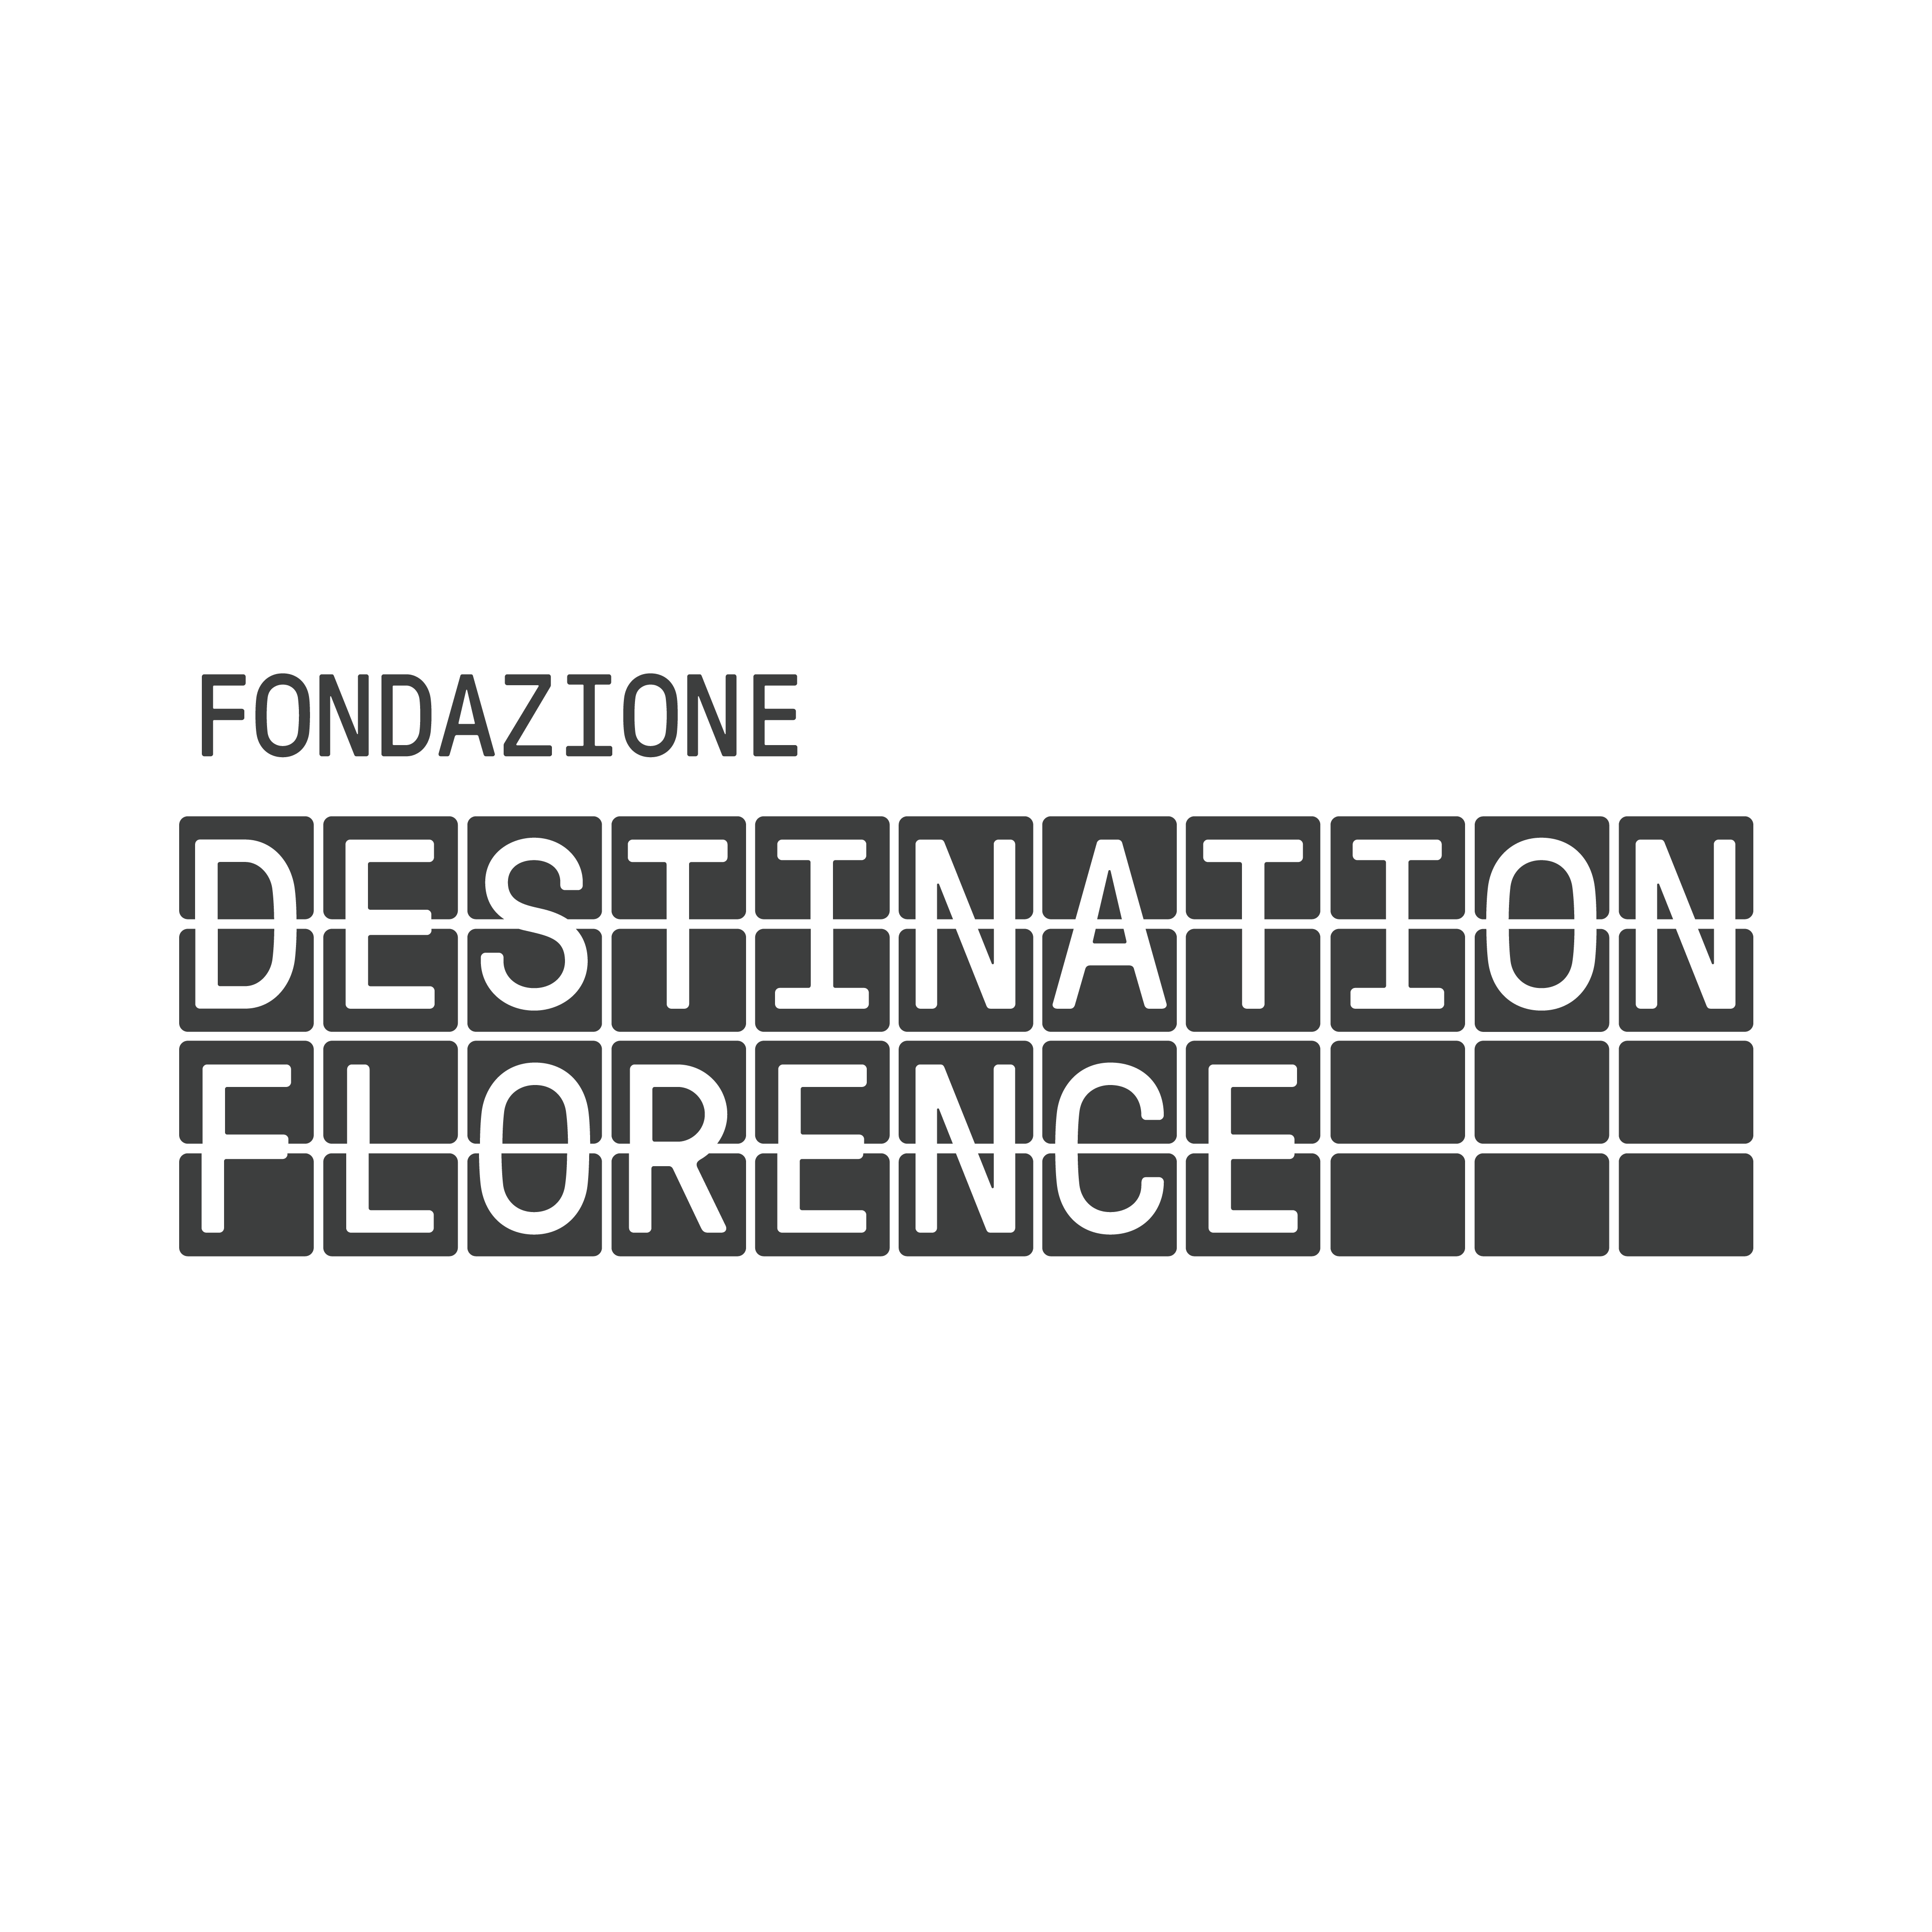 Collegamento esterno al sito Destination Florence